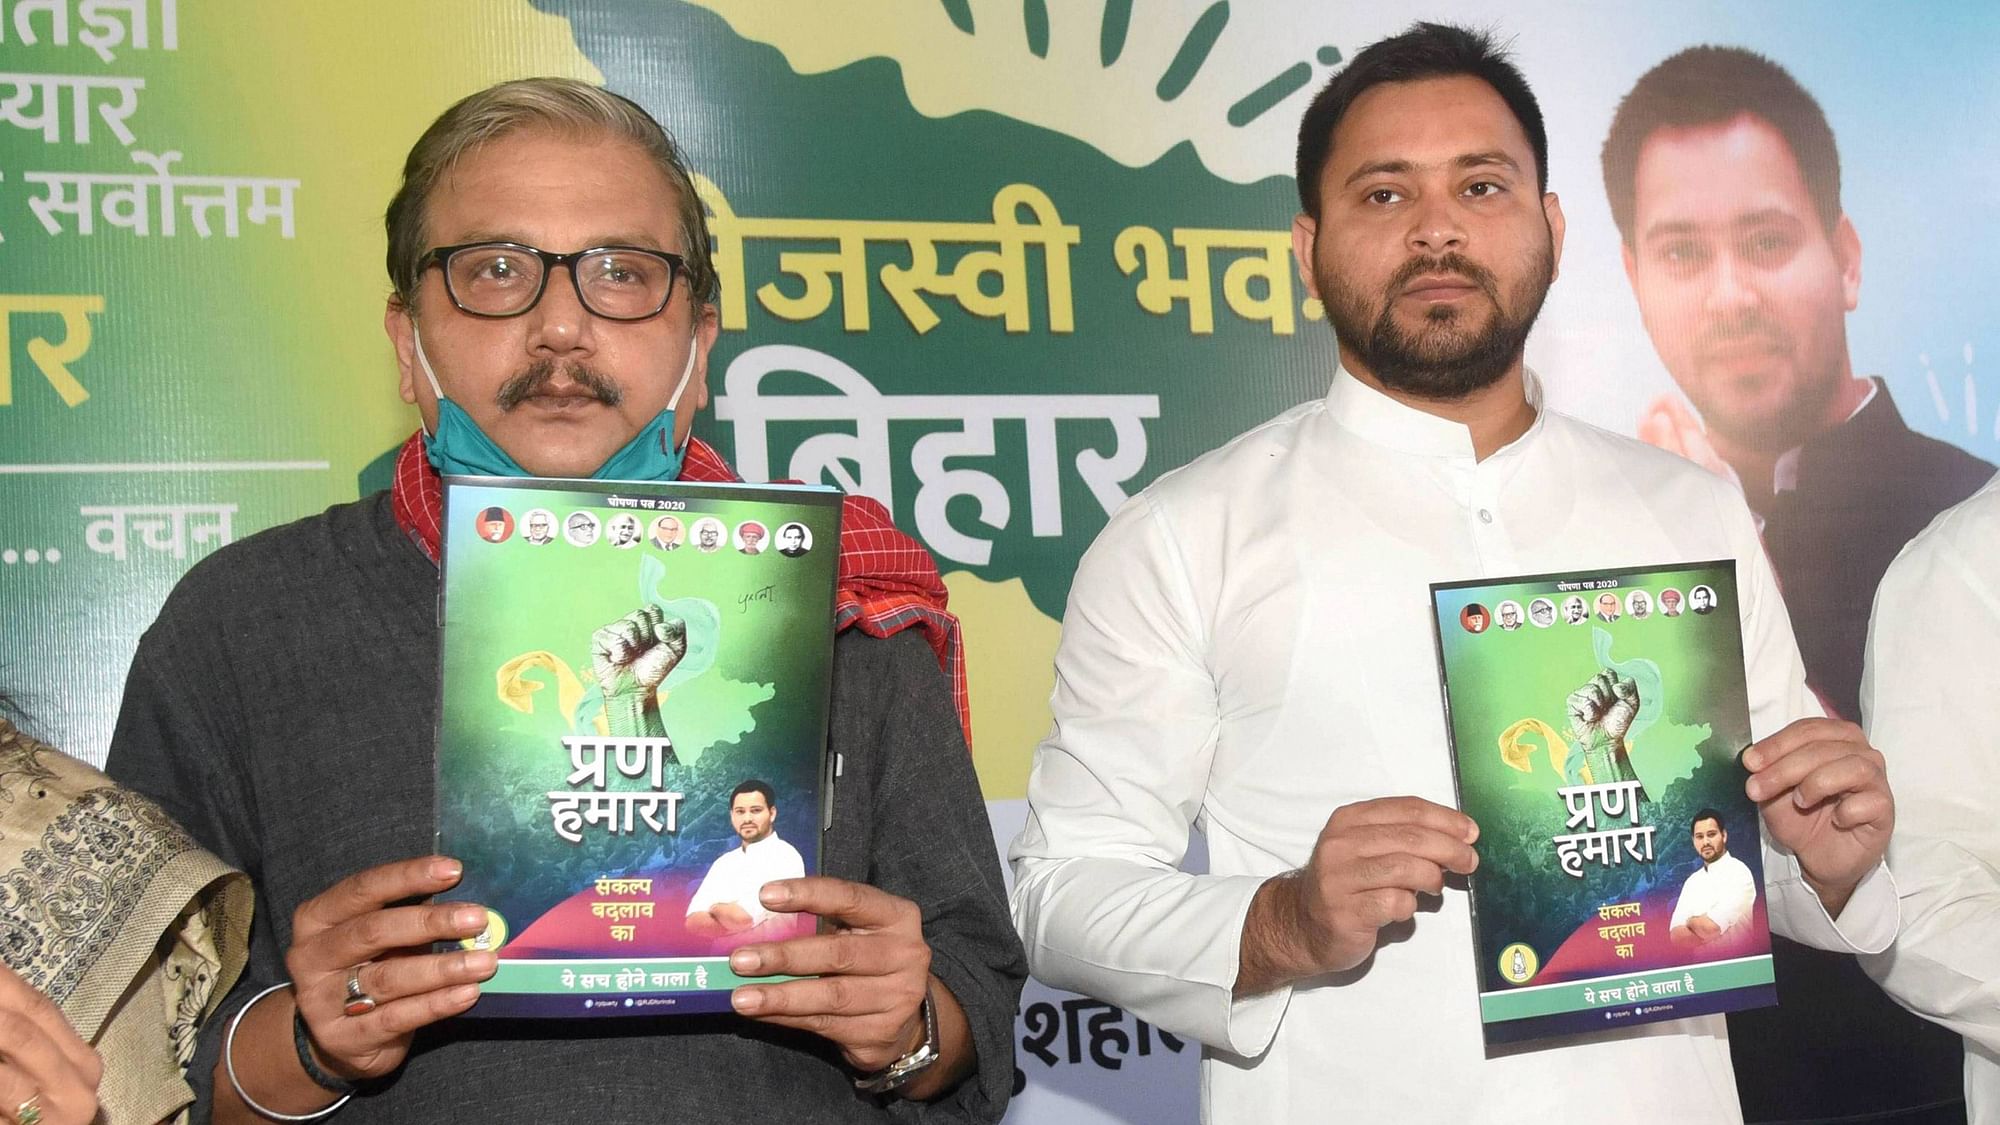 The manifesto, titled ‘Prann Hamara, Sankalp Badlav Ka’ was released by Rashtriya Janata Dal leader Tejashwi Yadav.